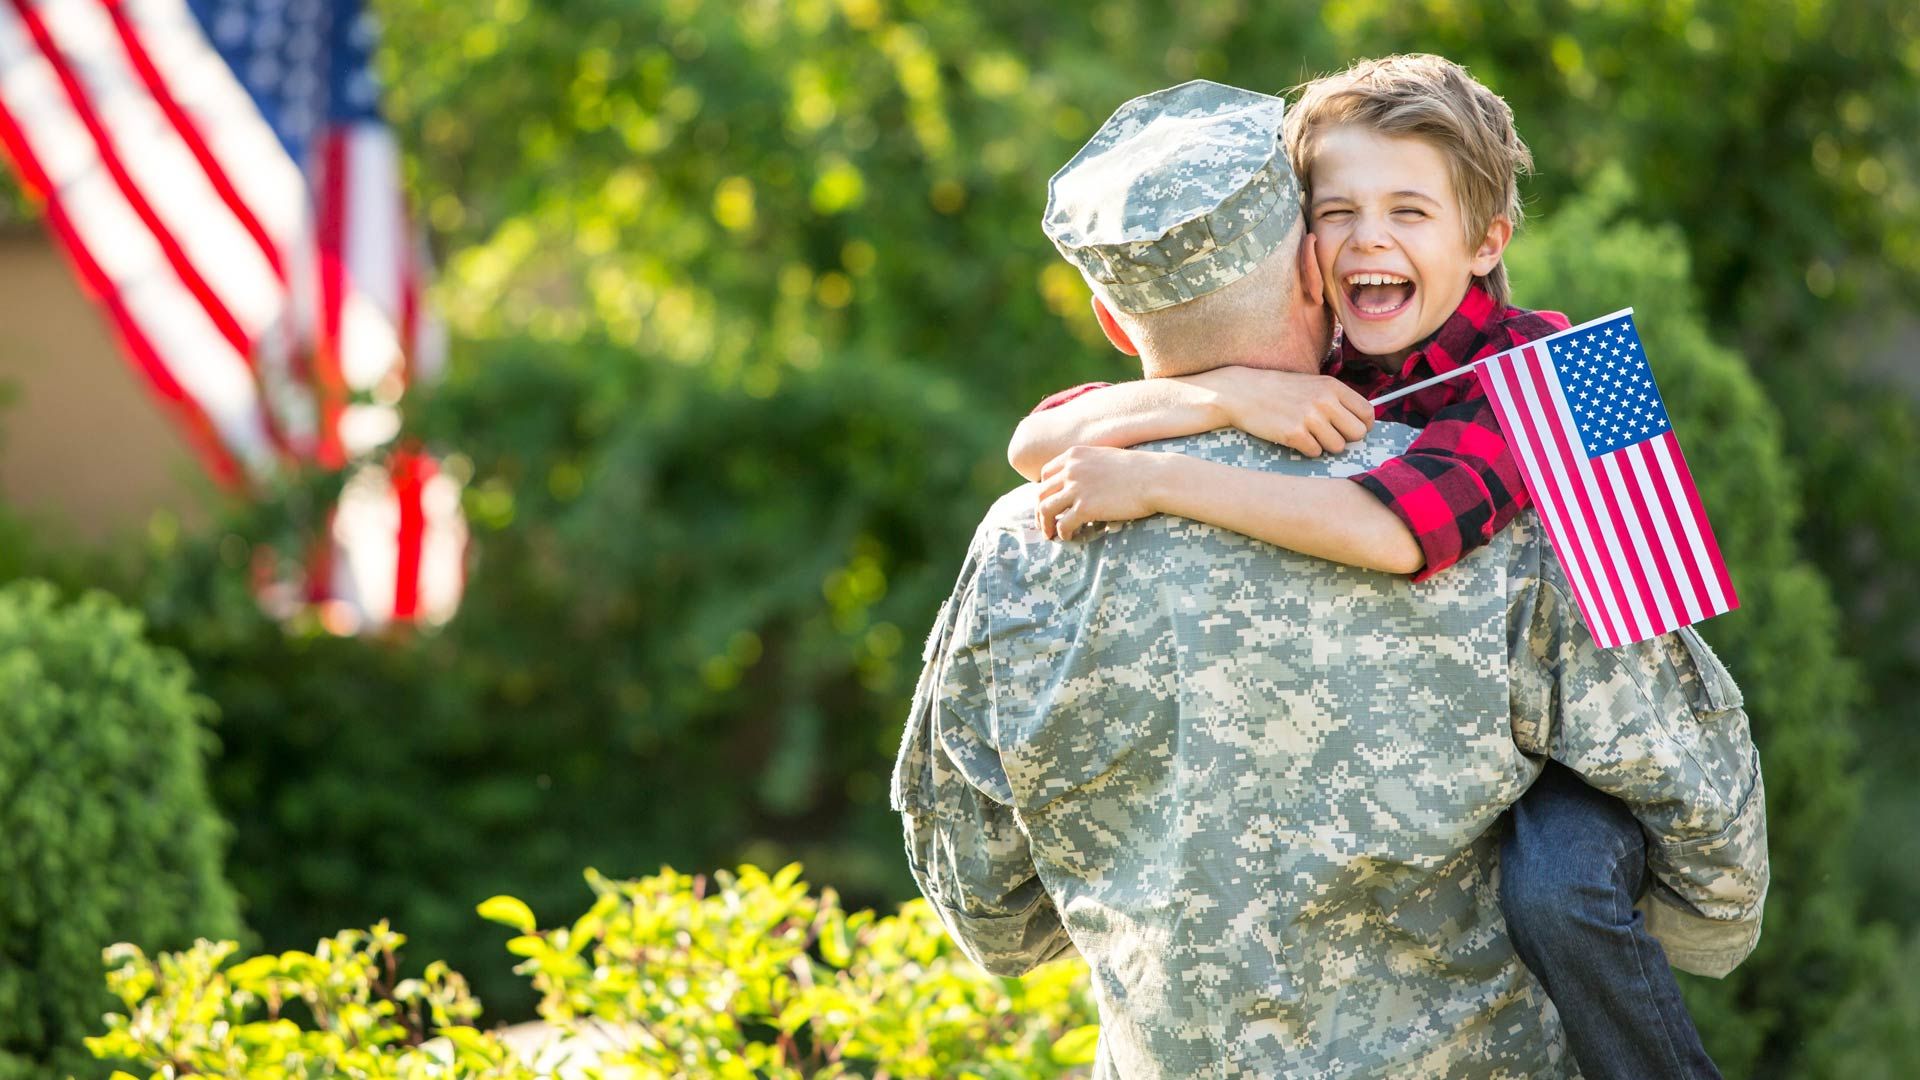 Sprechen Sie mit einem Kind in Ihrem Leben über Ihren Militärdienst